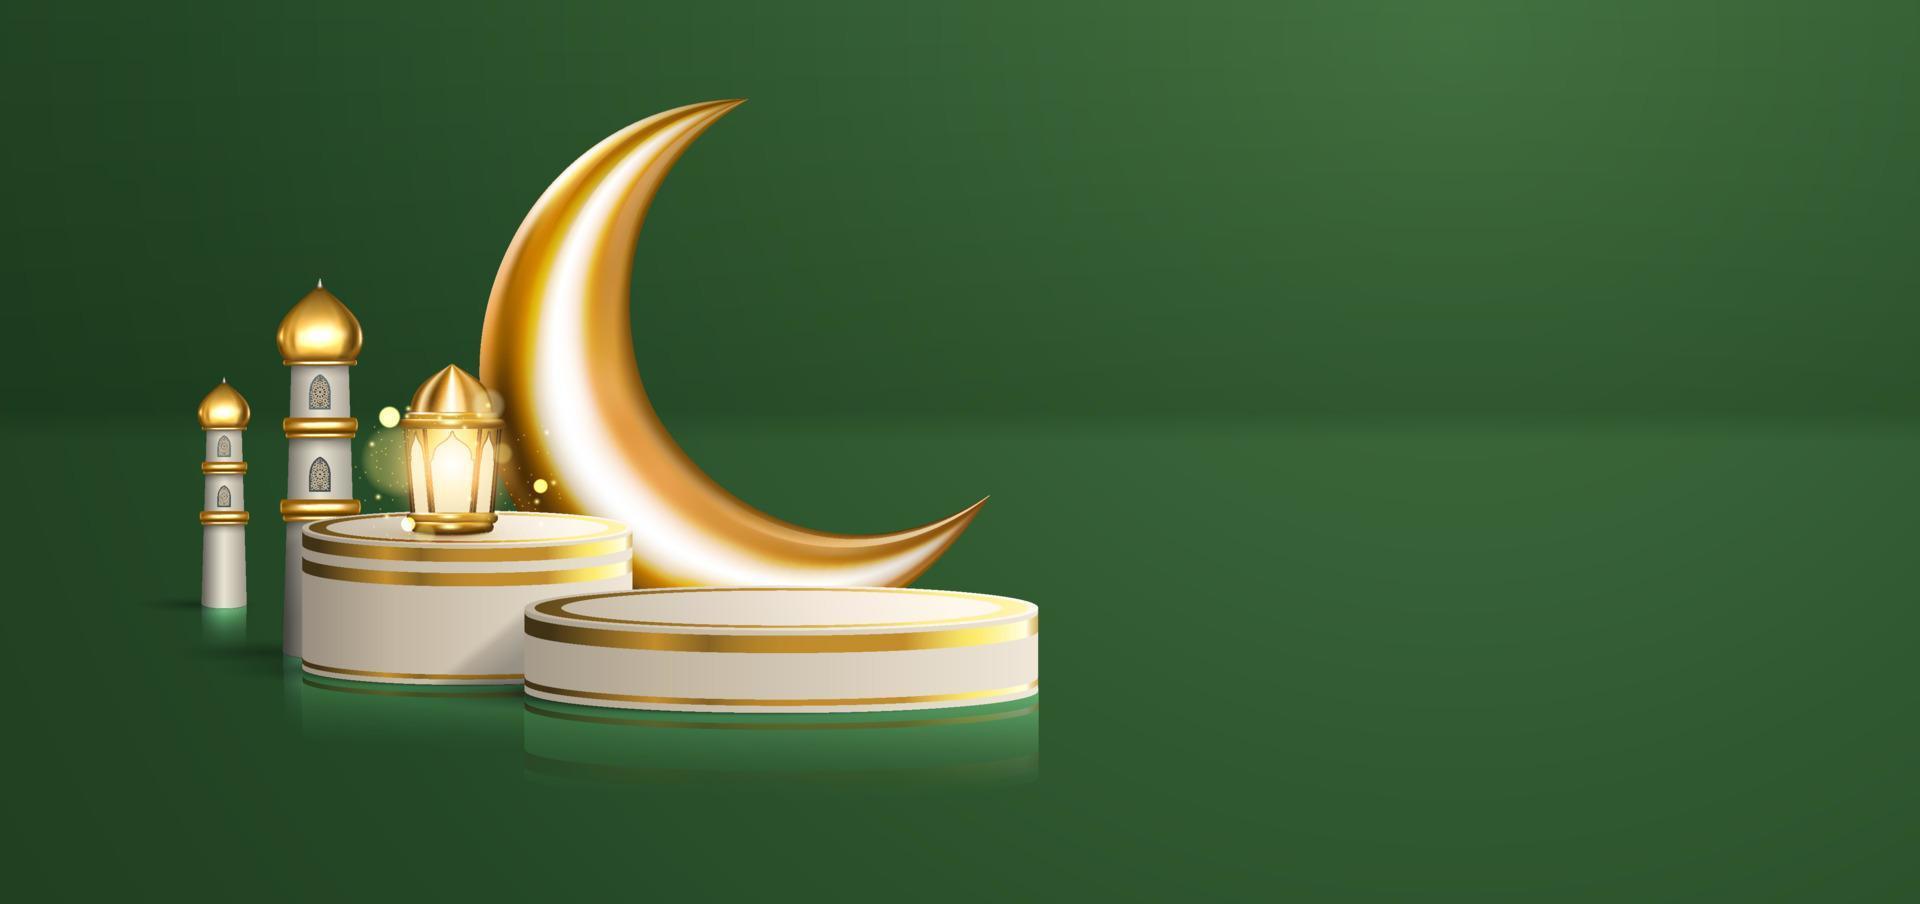 celebração islâmica 3d realista com ornamento árabe e pódio de produto em fundo verde. ilustração de ramadan kareem para publicidade, vendas, compras on-line e marketing vetor